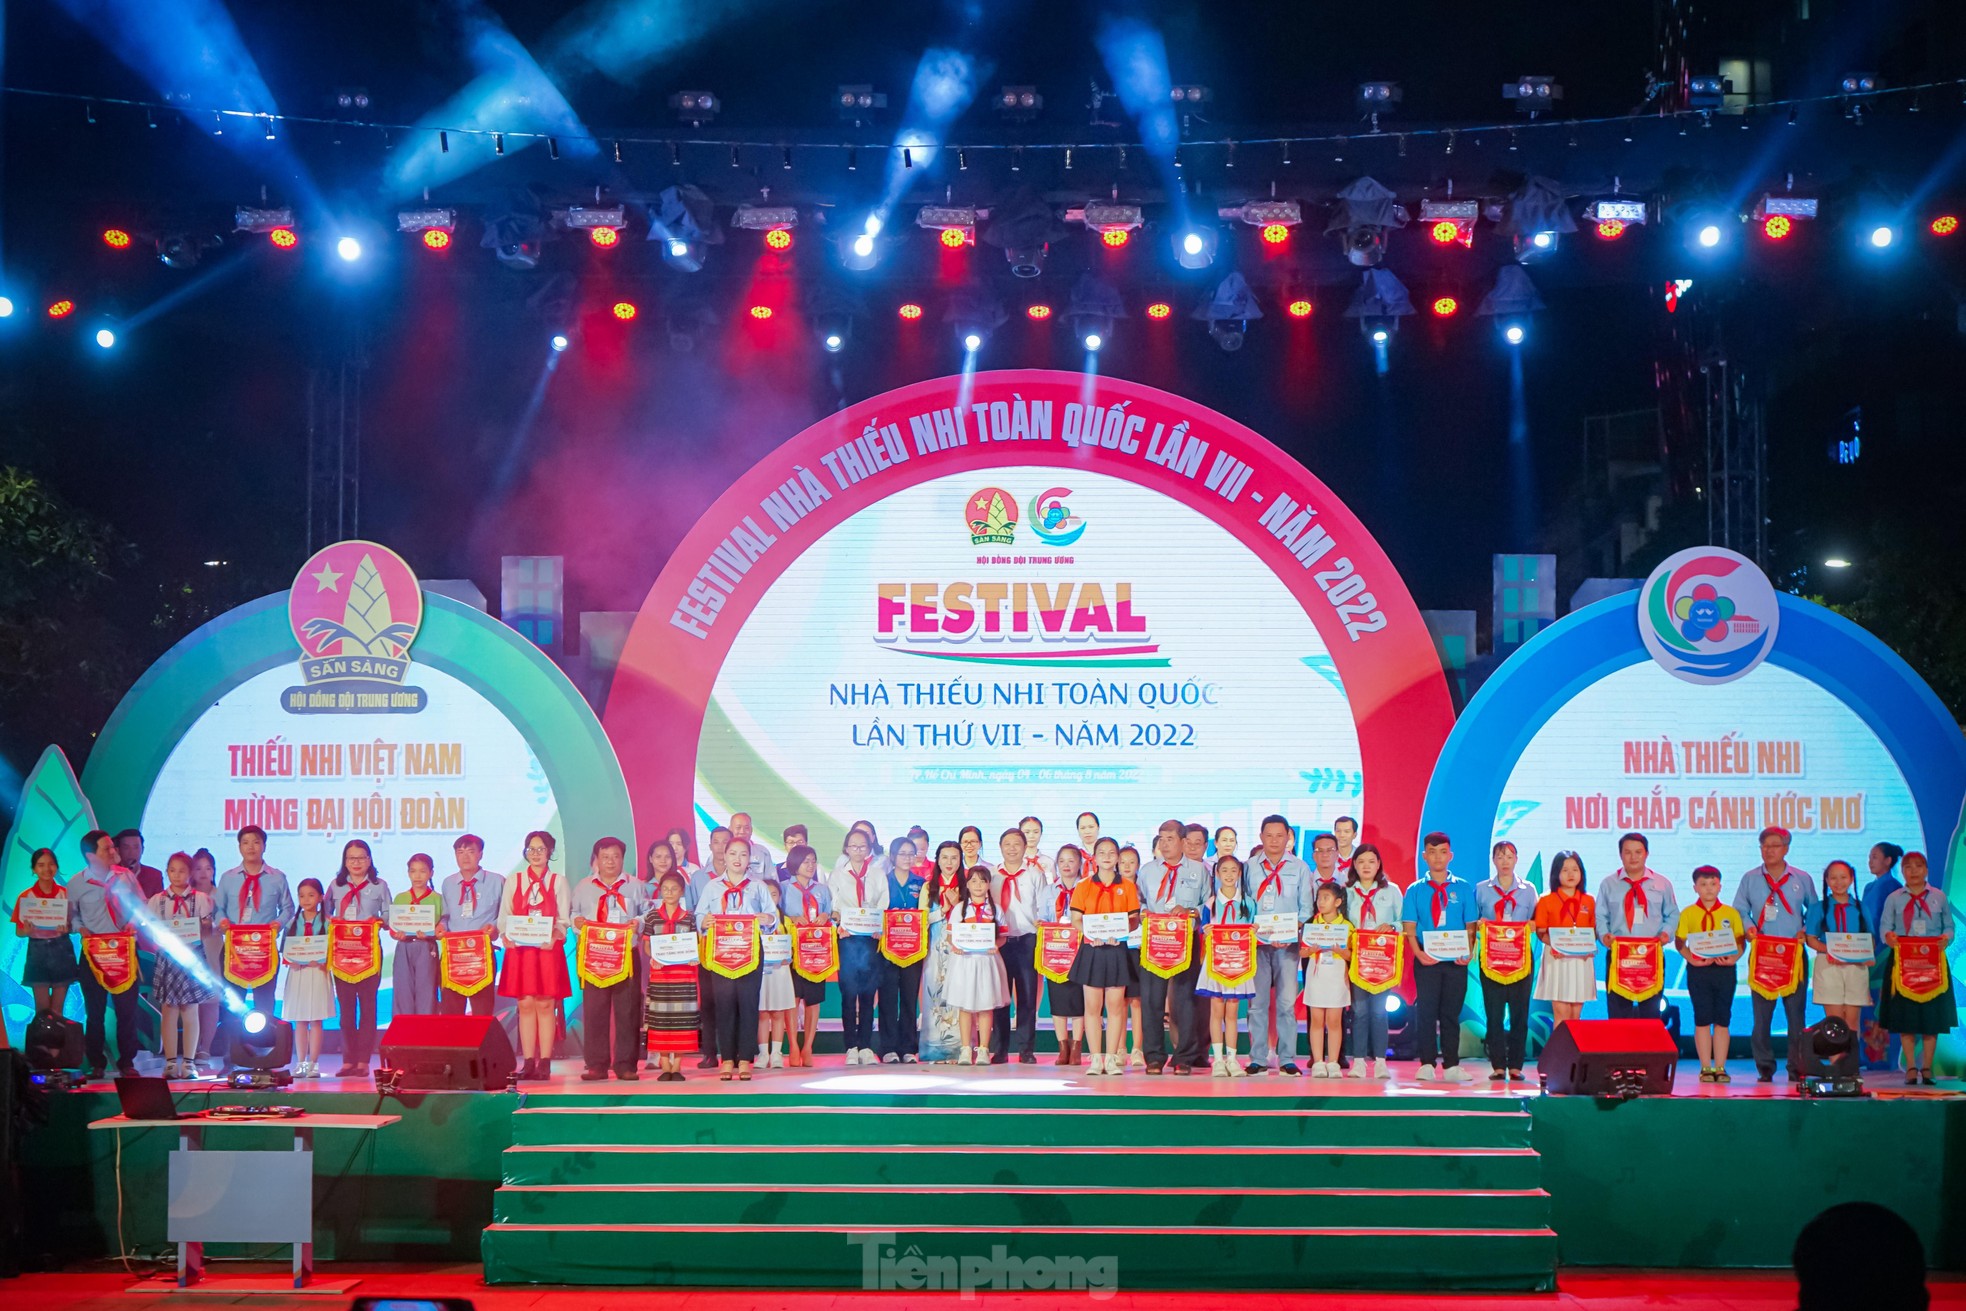 Khai mạc Festival Nhà Thiếu nhi toàn quốc 2022 tại TPHCM ảnh 8